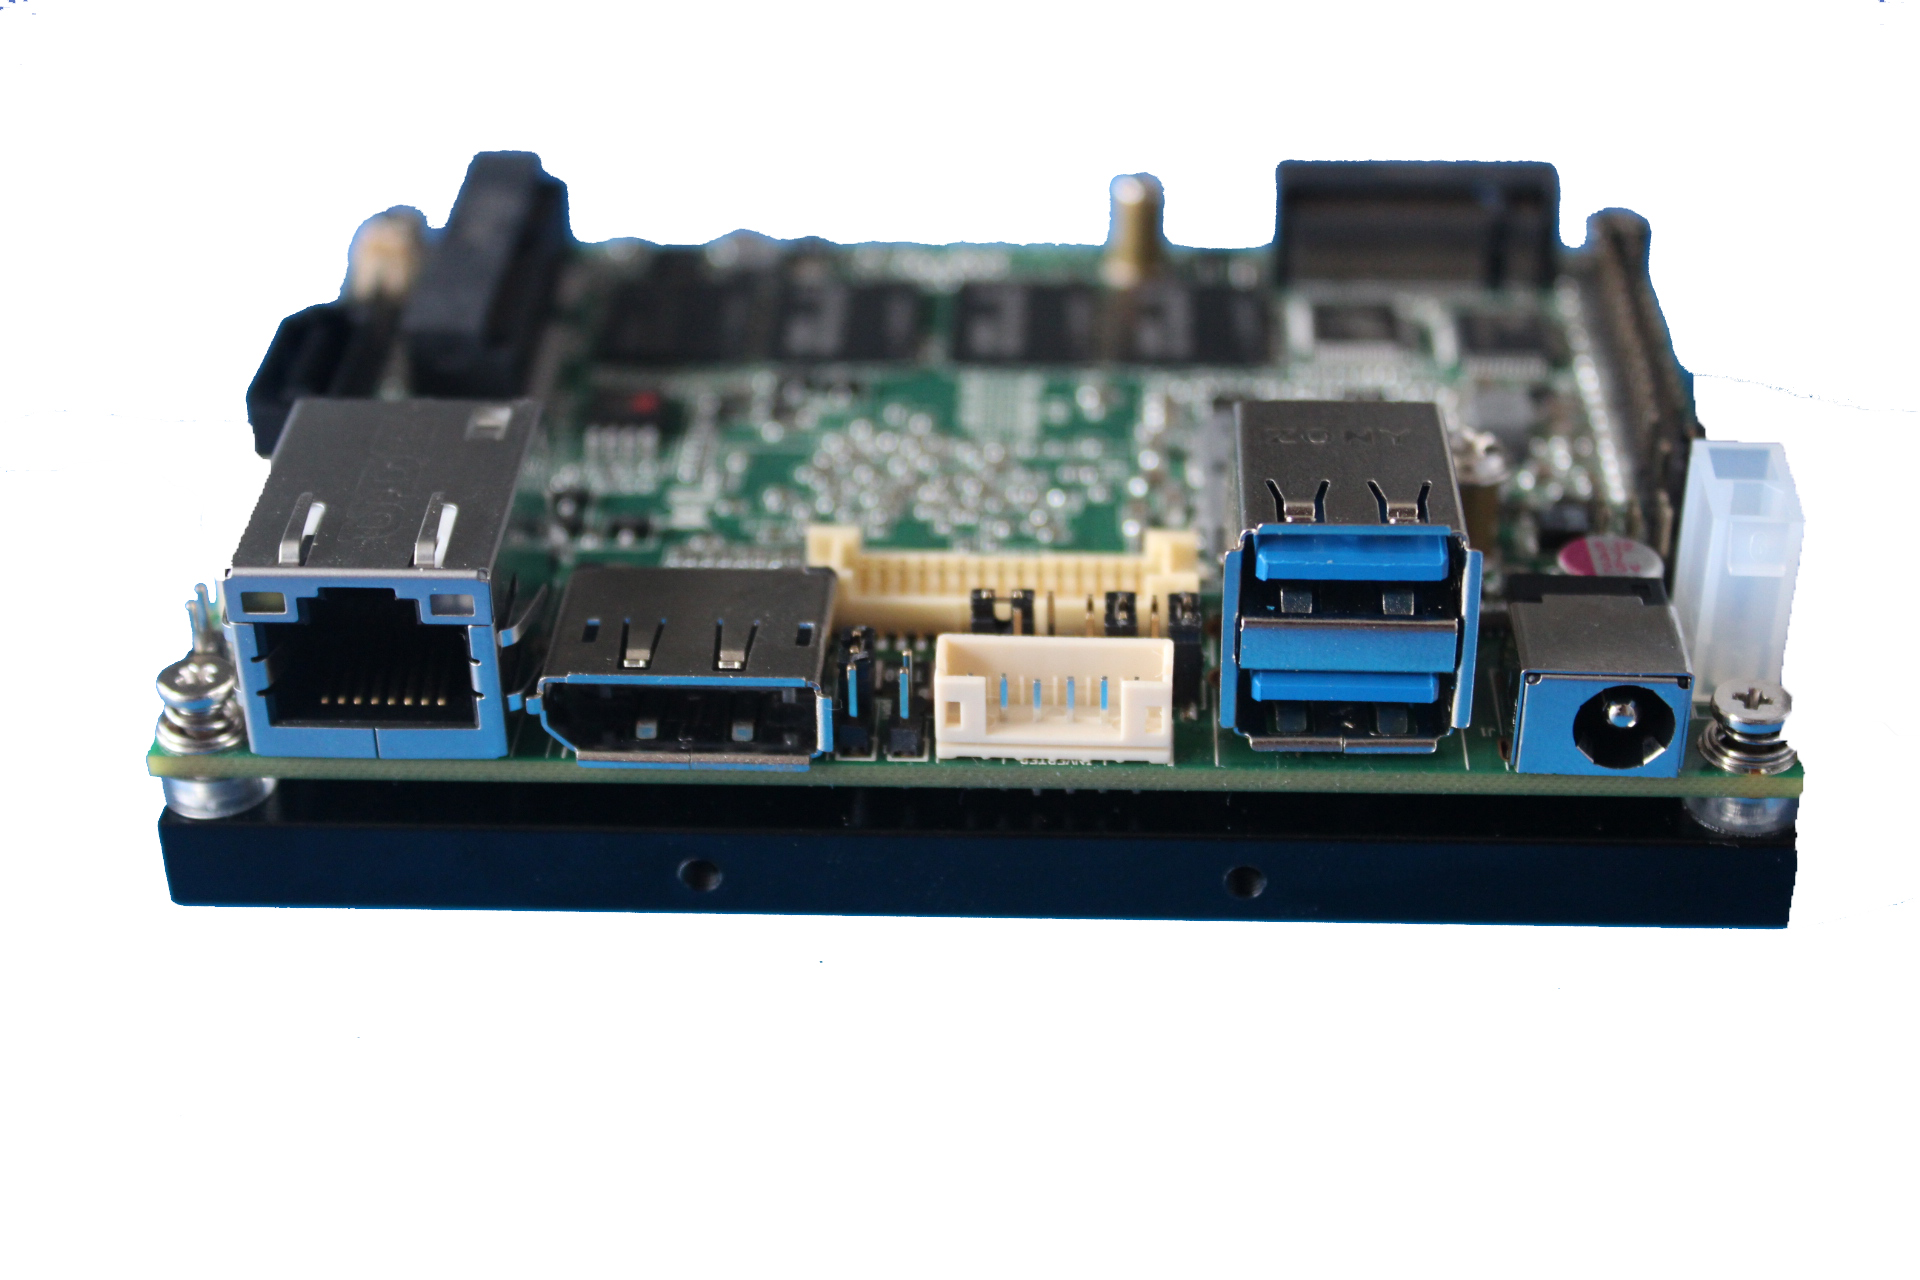 英特尔J3160 名片大小主板 低功耗、高性能、高可靠性、2..5 寸嵌入式主板 支持24位LVDS 板载4G内存 HDMI显示输出 2个串口 4个USB3.0 MINI-PCIE